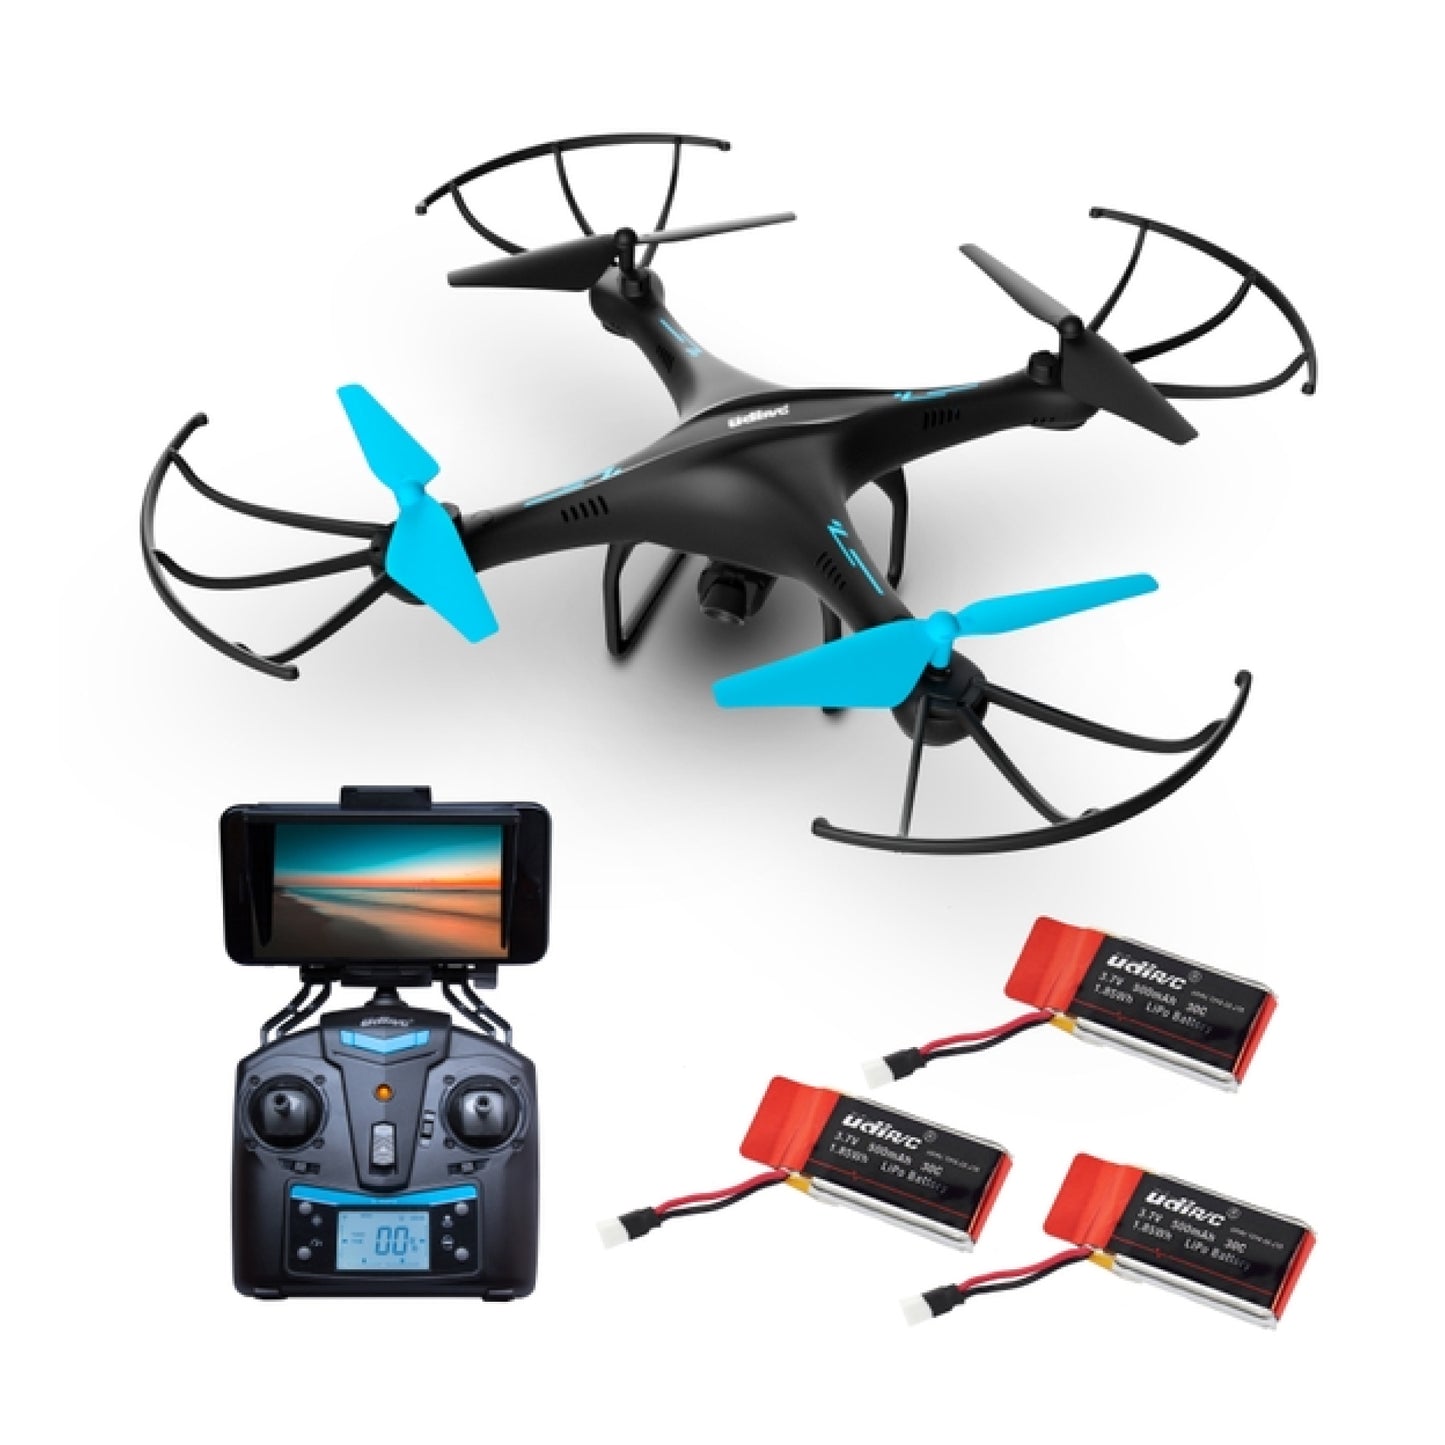 Blue Jay Drone with HD Camera U45W